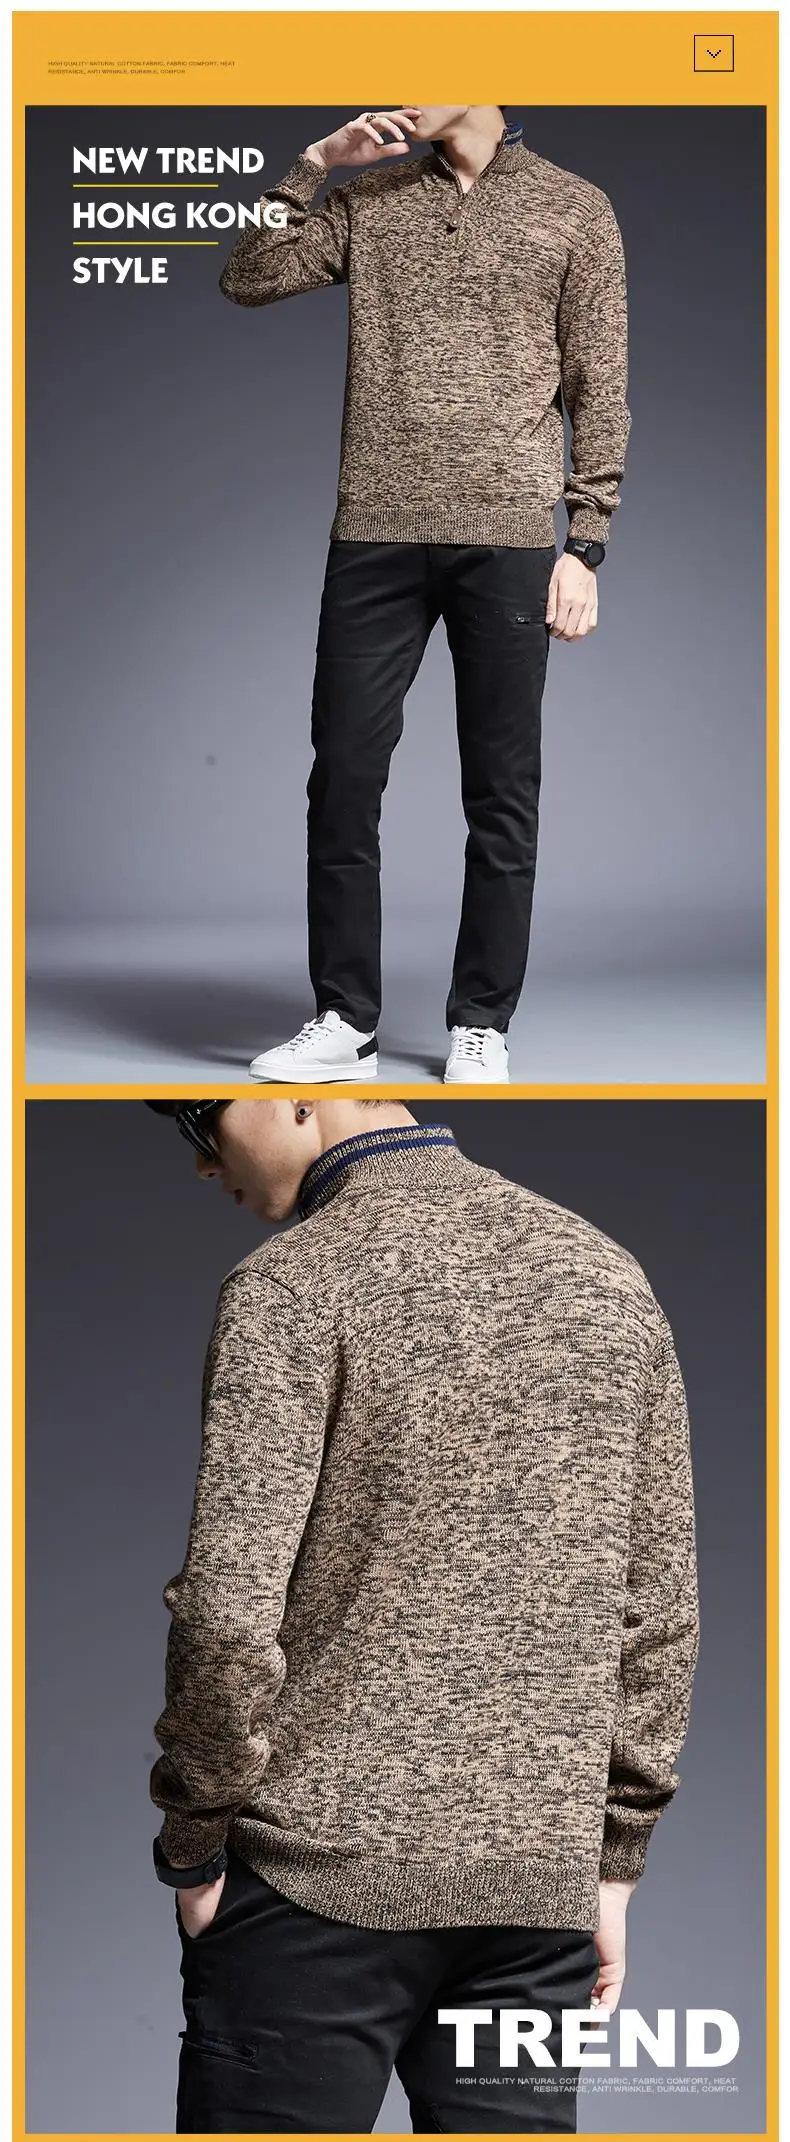 2019 новый модный бренд свитер для мужчин пуловеры Slim Fit Джемперы трикотажная кофта Осень корейский стиль повседневное мужская одежда